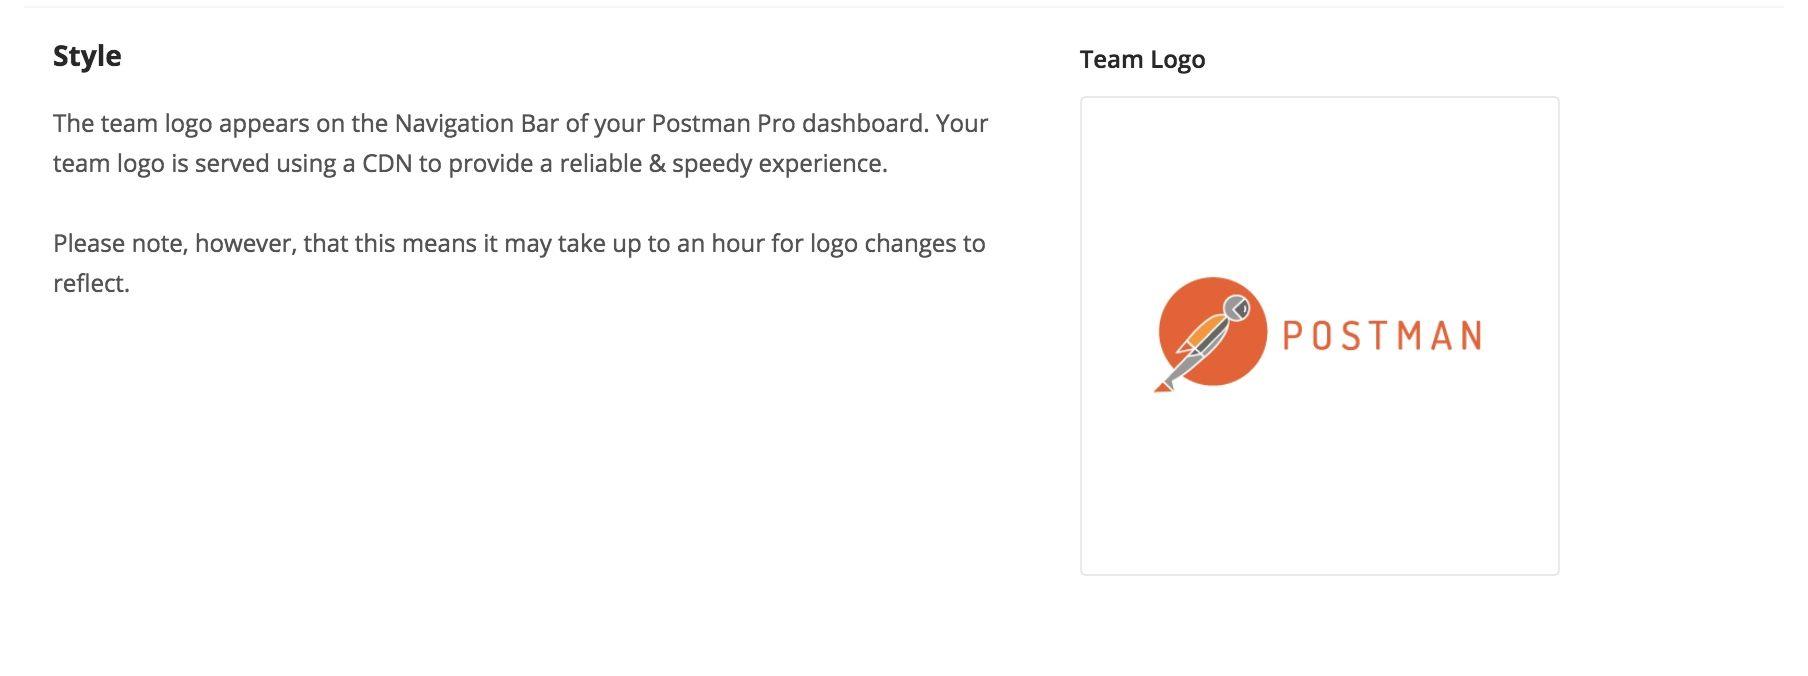 Postman Logo - Team Settings | Postman Learning Center